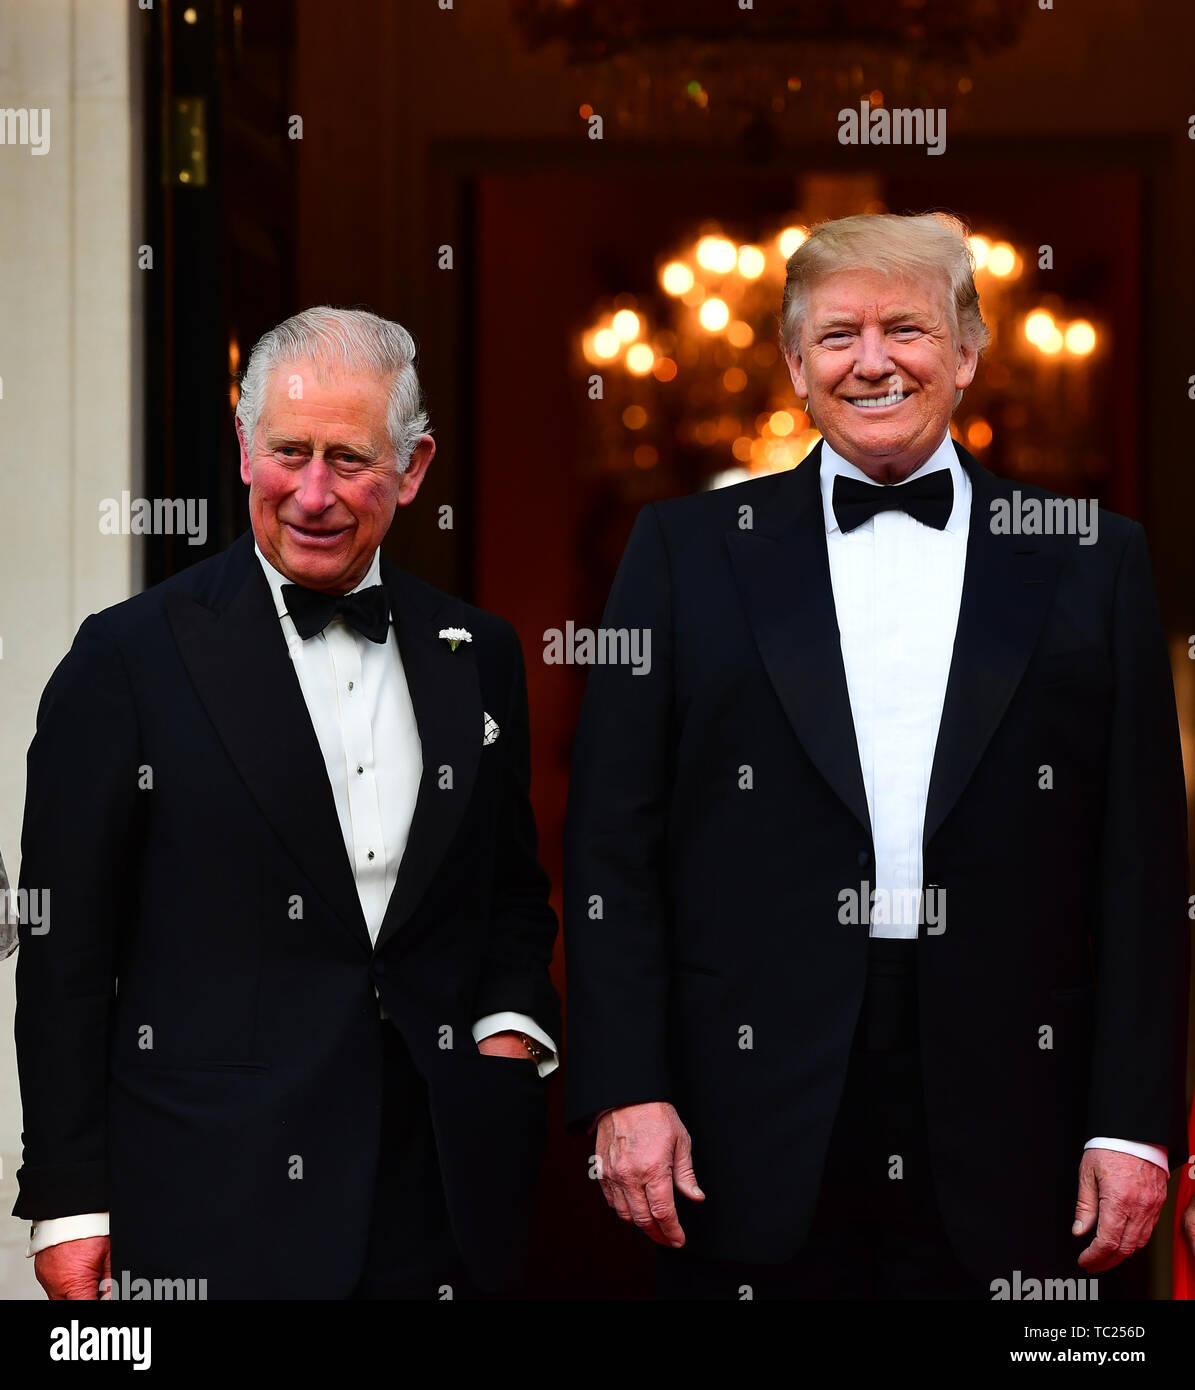 El Príncipe de Gales es saludado por el Presidente de EEUU, Donald Trump fuera Winfield House, la residencia del Embajador de los Estados Unidos de América para el Reino Unido, en el Regent's Park, Londres, el regreso de la cena como parte de su visita de estado en el Reino Unido. Foto de stock